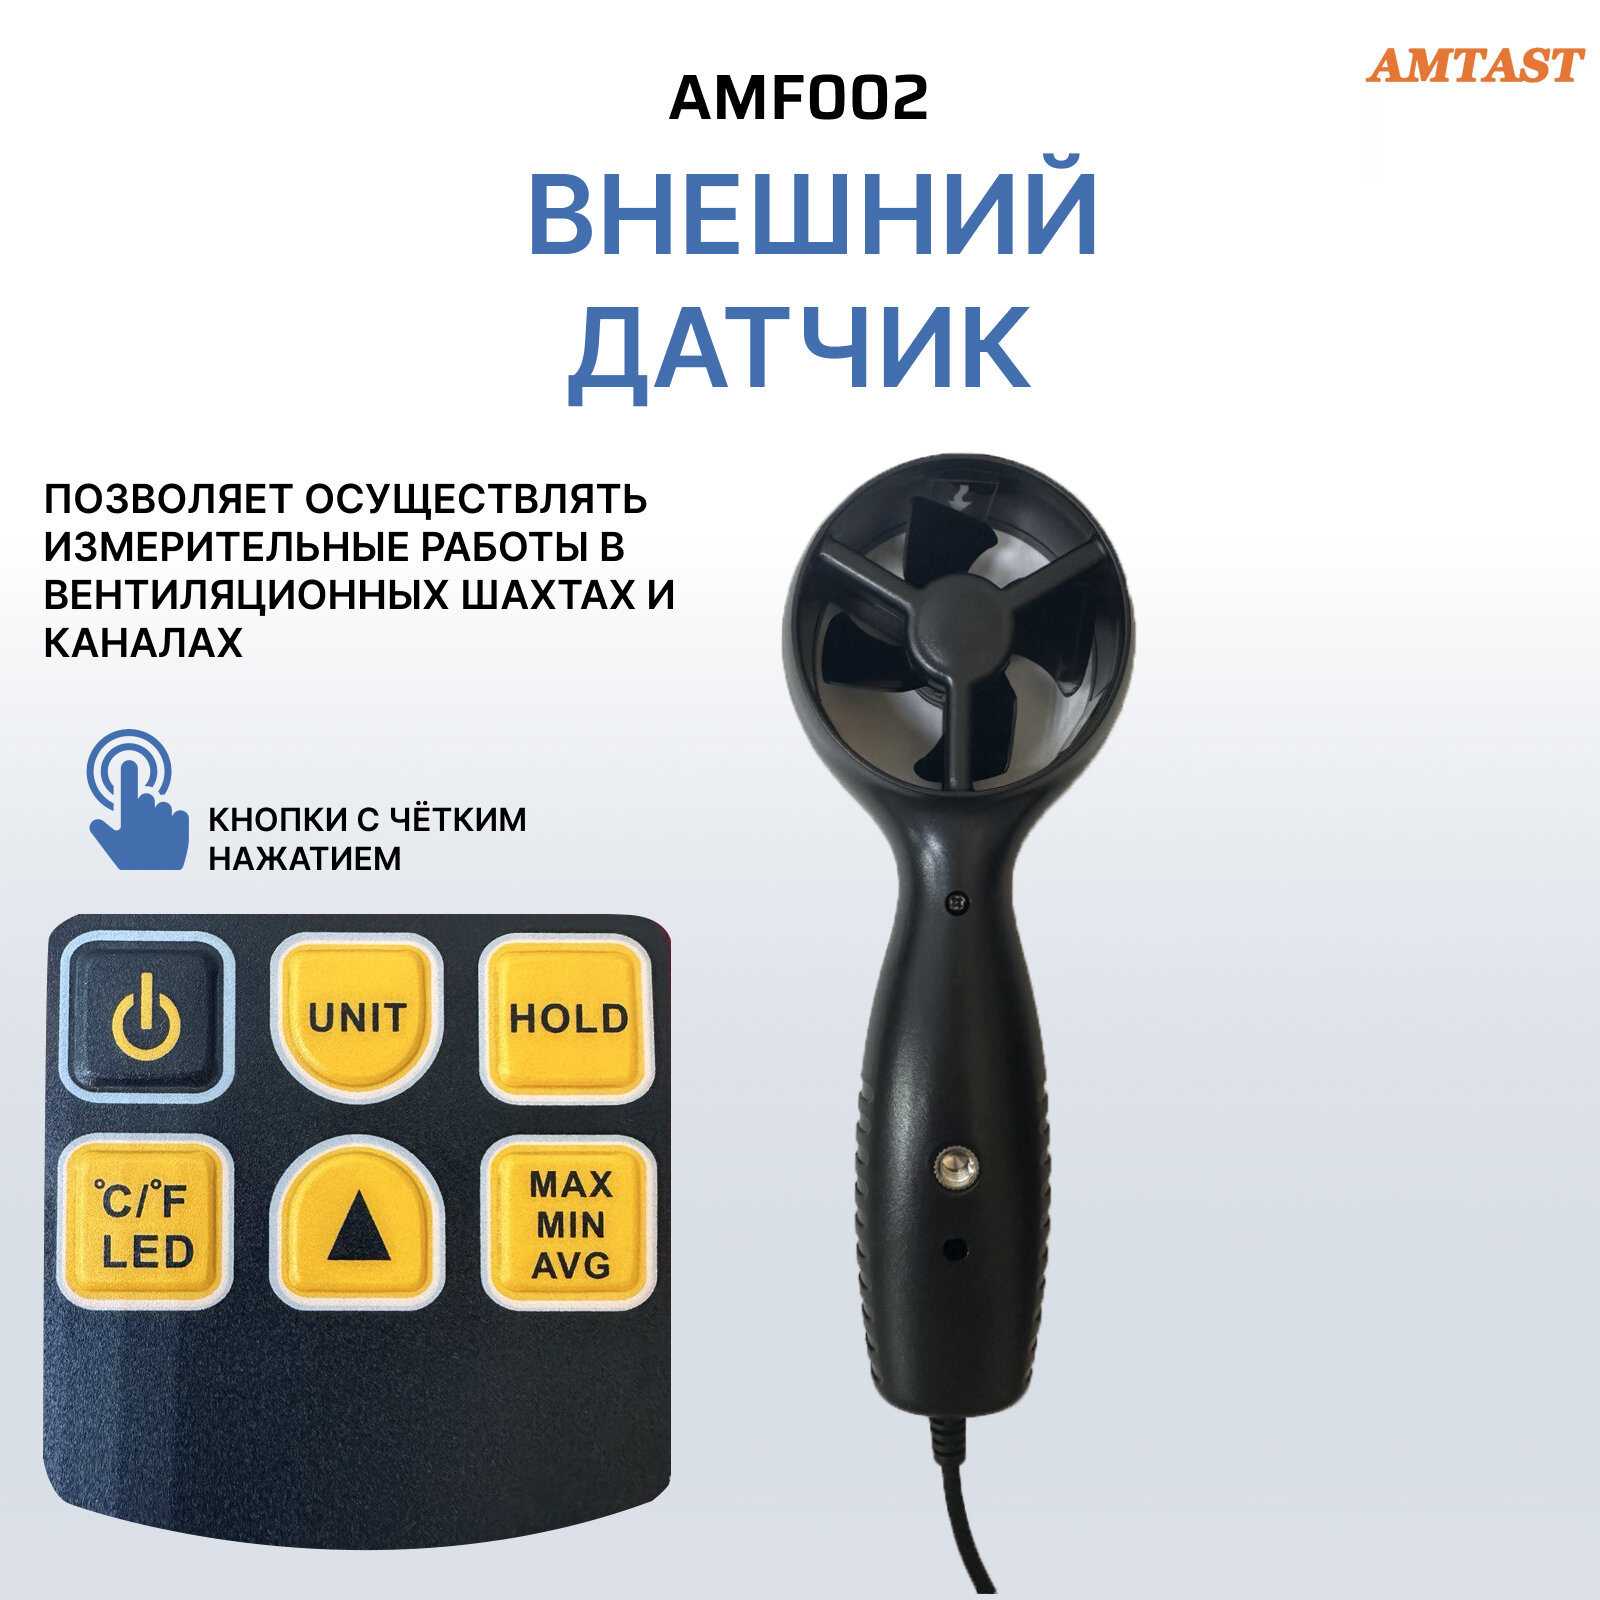 Анемометр крыльчатый AMTAST AMF002 для измерения скорости и температуры ветра с выносным датчиком